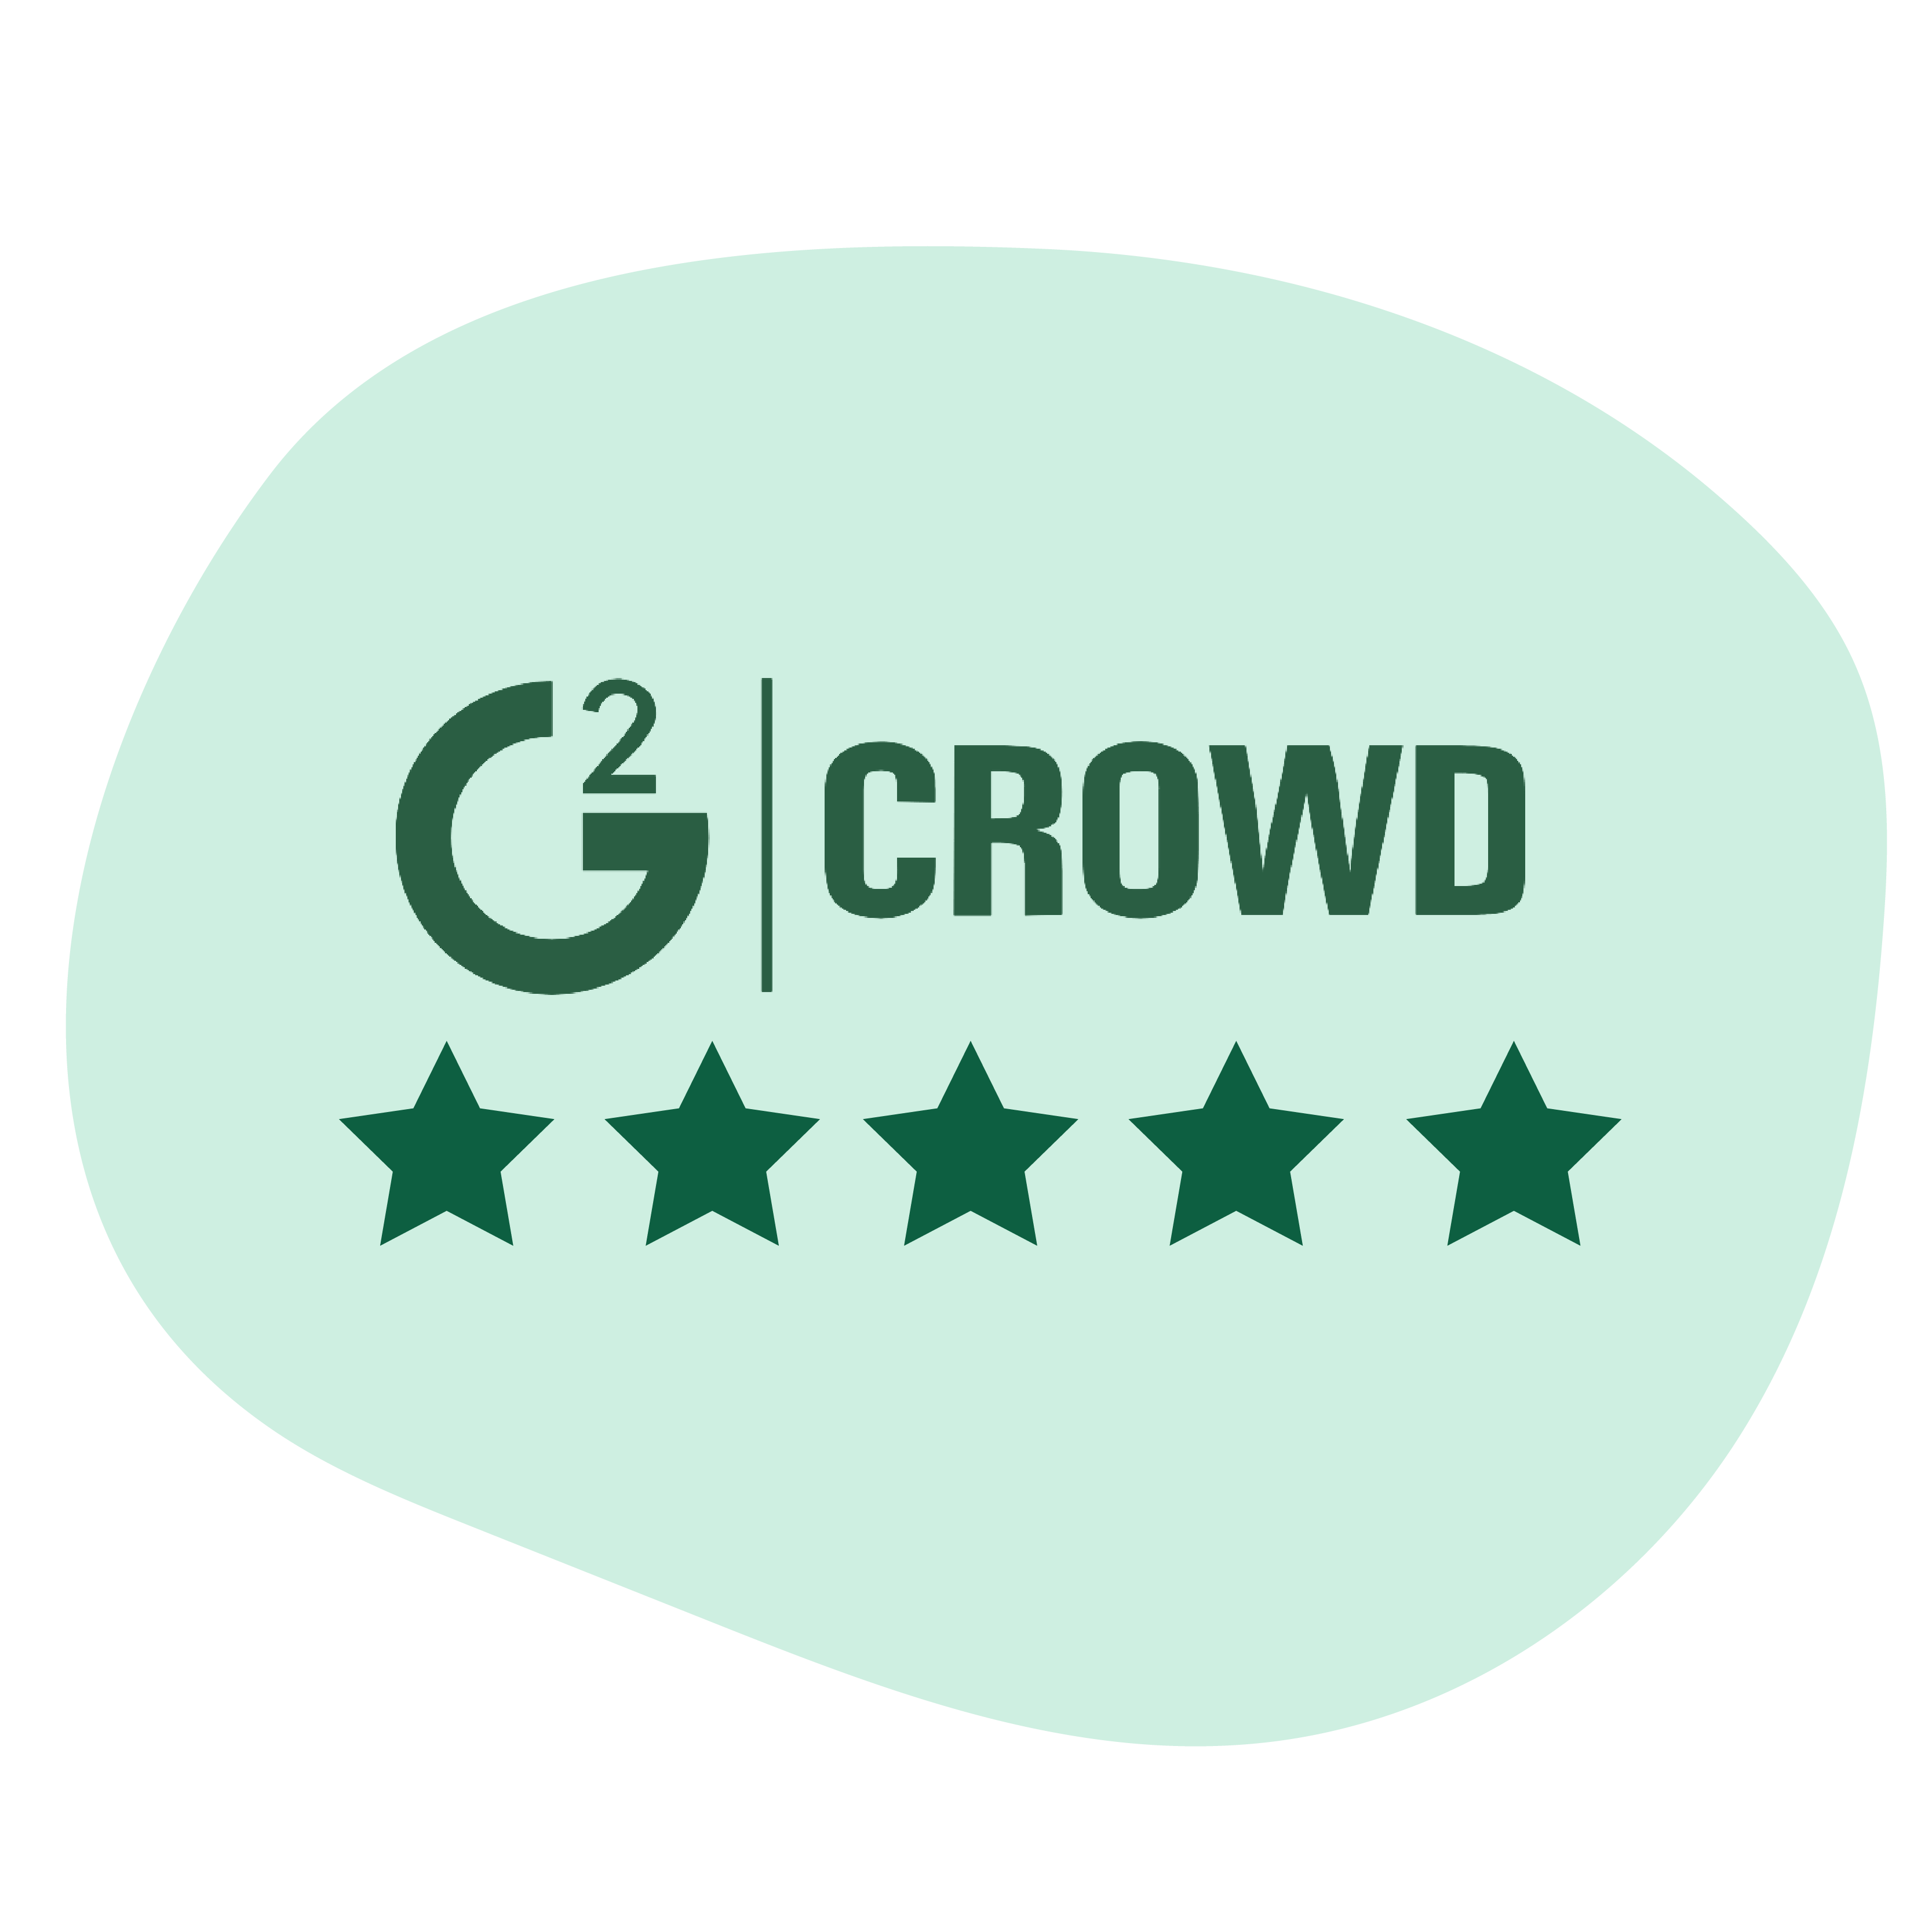 Queue-it G2 Crowd review